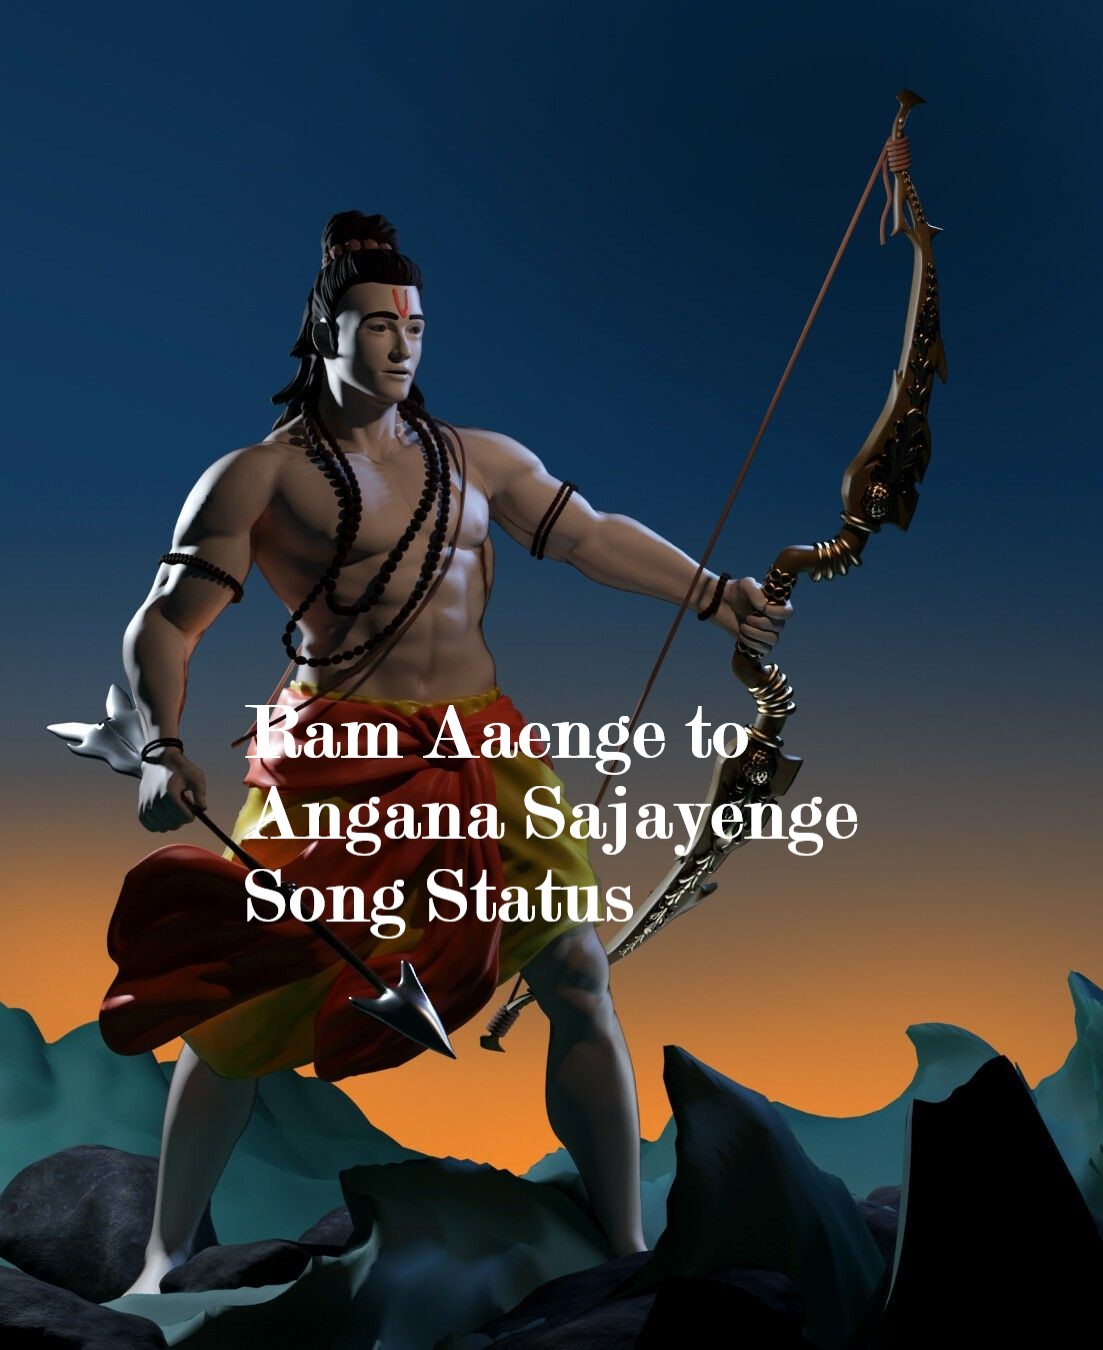 Ram Aaenge to angana sajayenge song